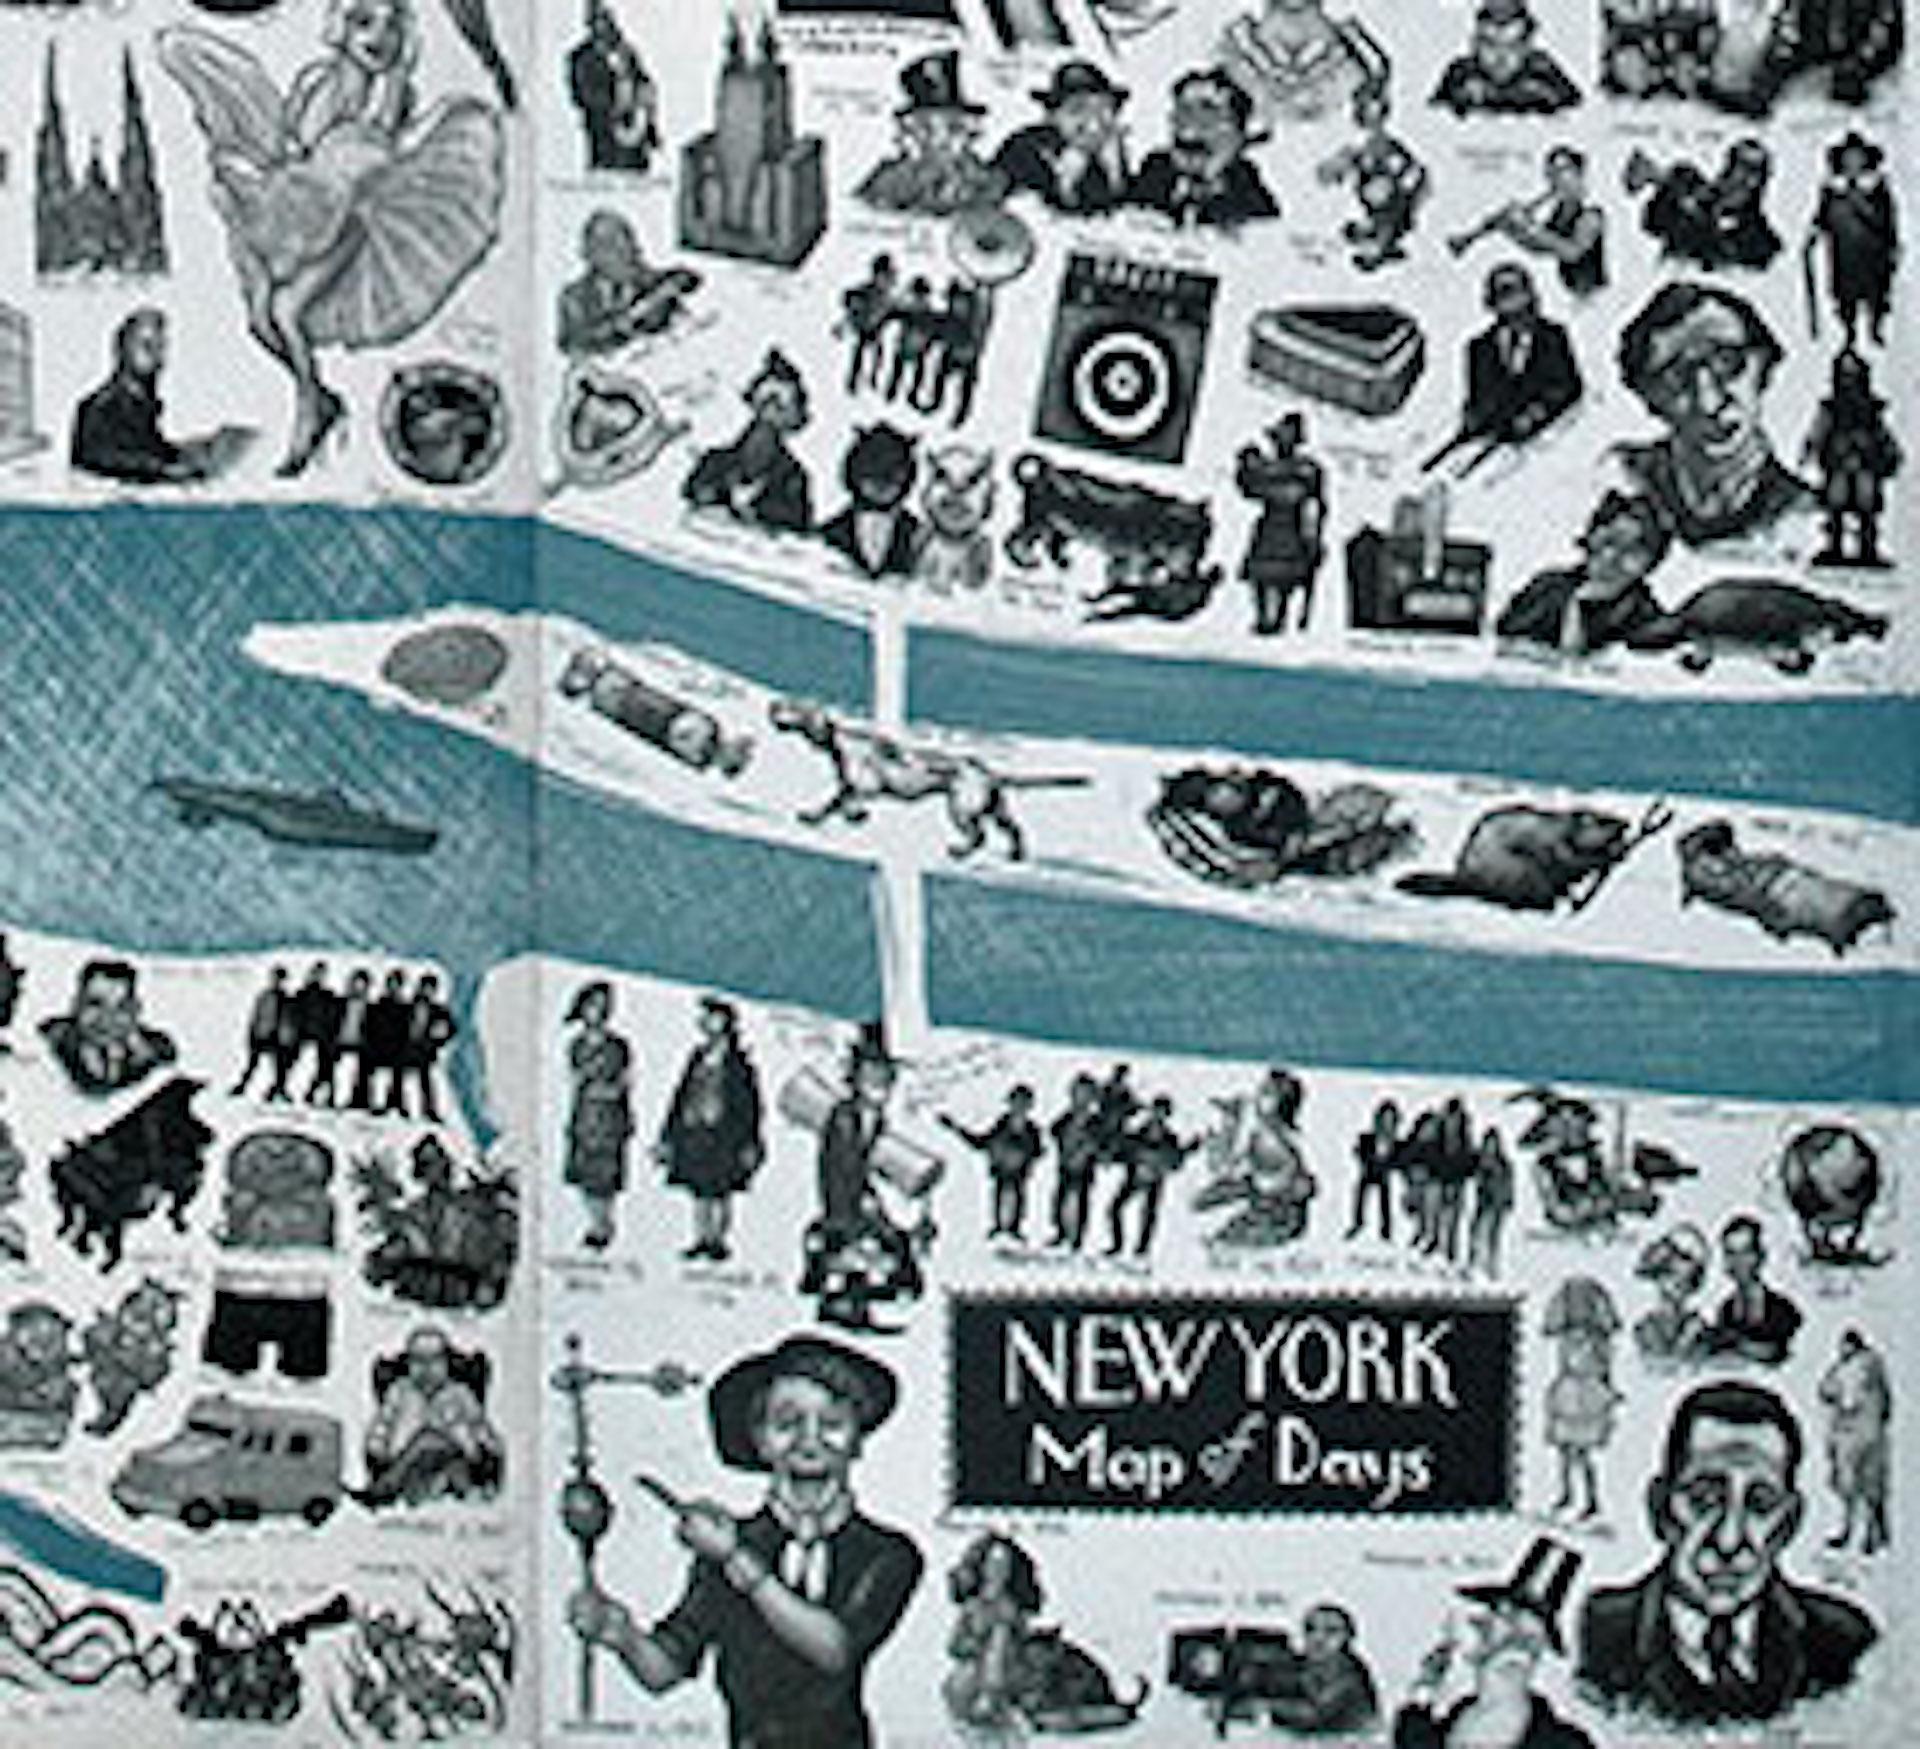 New York Map of Days est une gravure à l'eau-forte en édition limitée de Mychael Barratt. Le style illustratif de cette pièce donne vie à New York, à ses points de repère et à ses innombrables histoires.

Gravure - Technique d'impression en relief